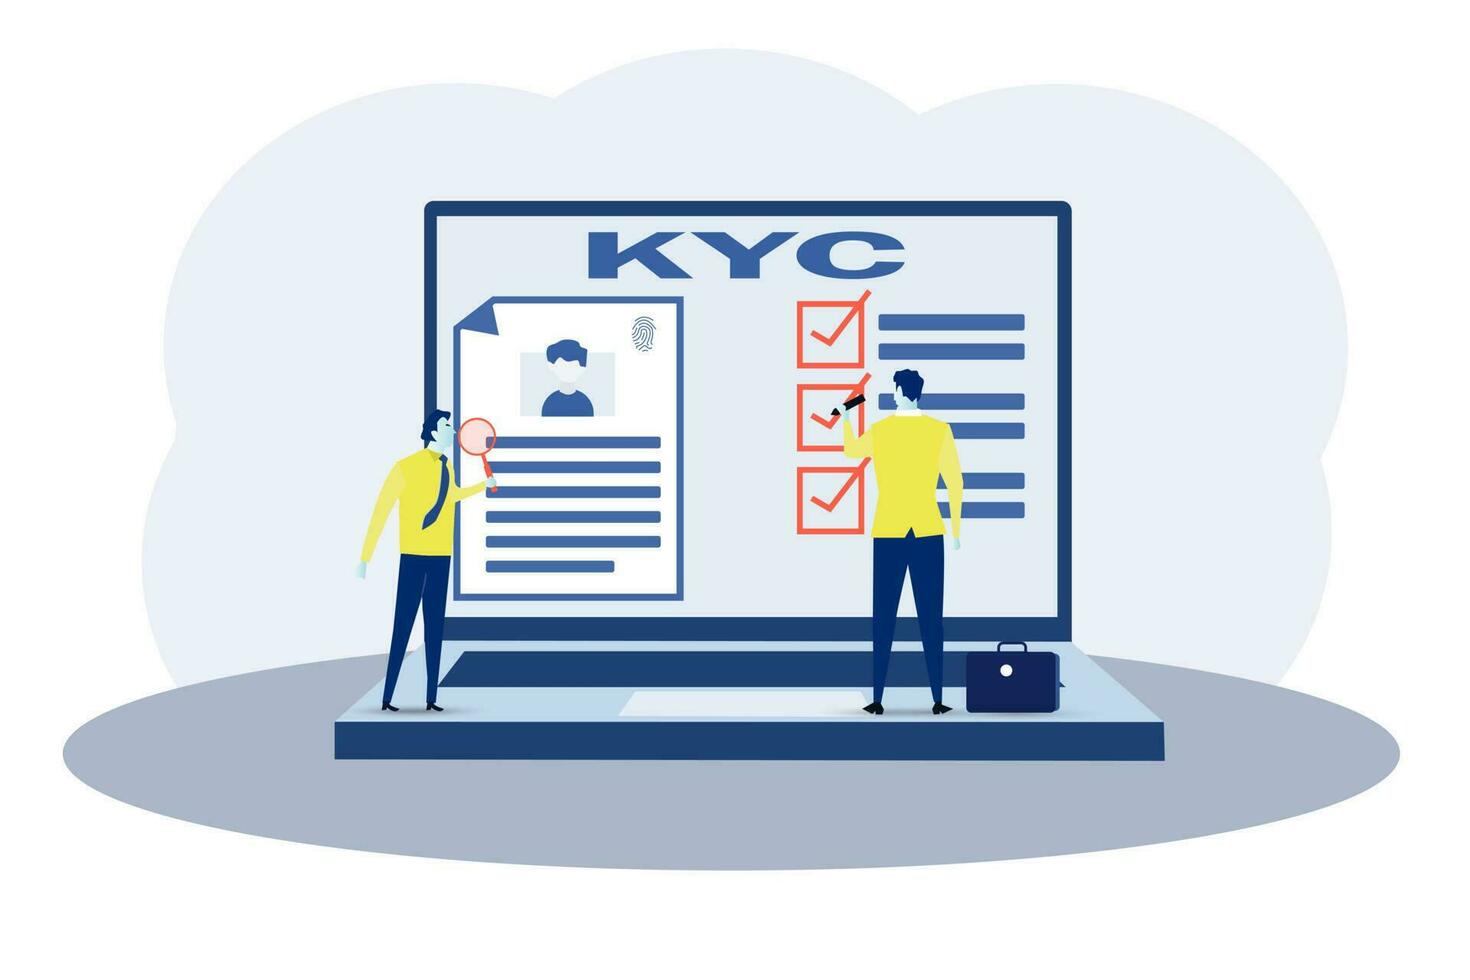 kyc ou conhecer seu o negócio com cliente verificando a identidade do Está clientes conceito às a futuros parceiros através uma ampliação vidro vetor ilustrador